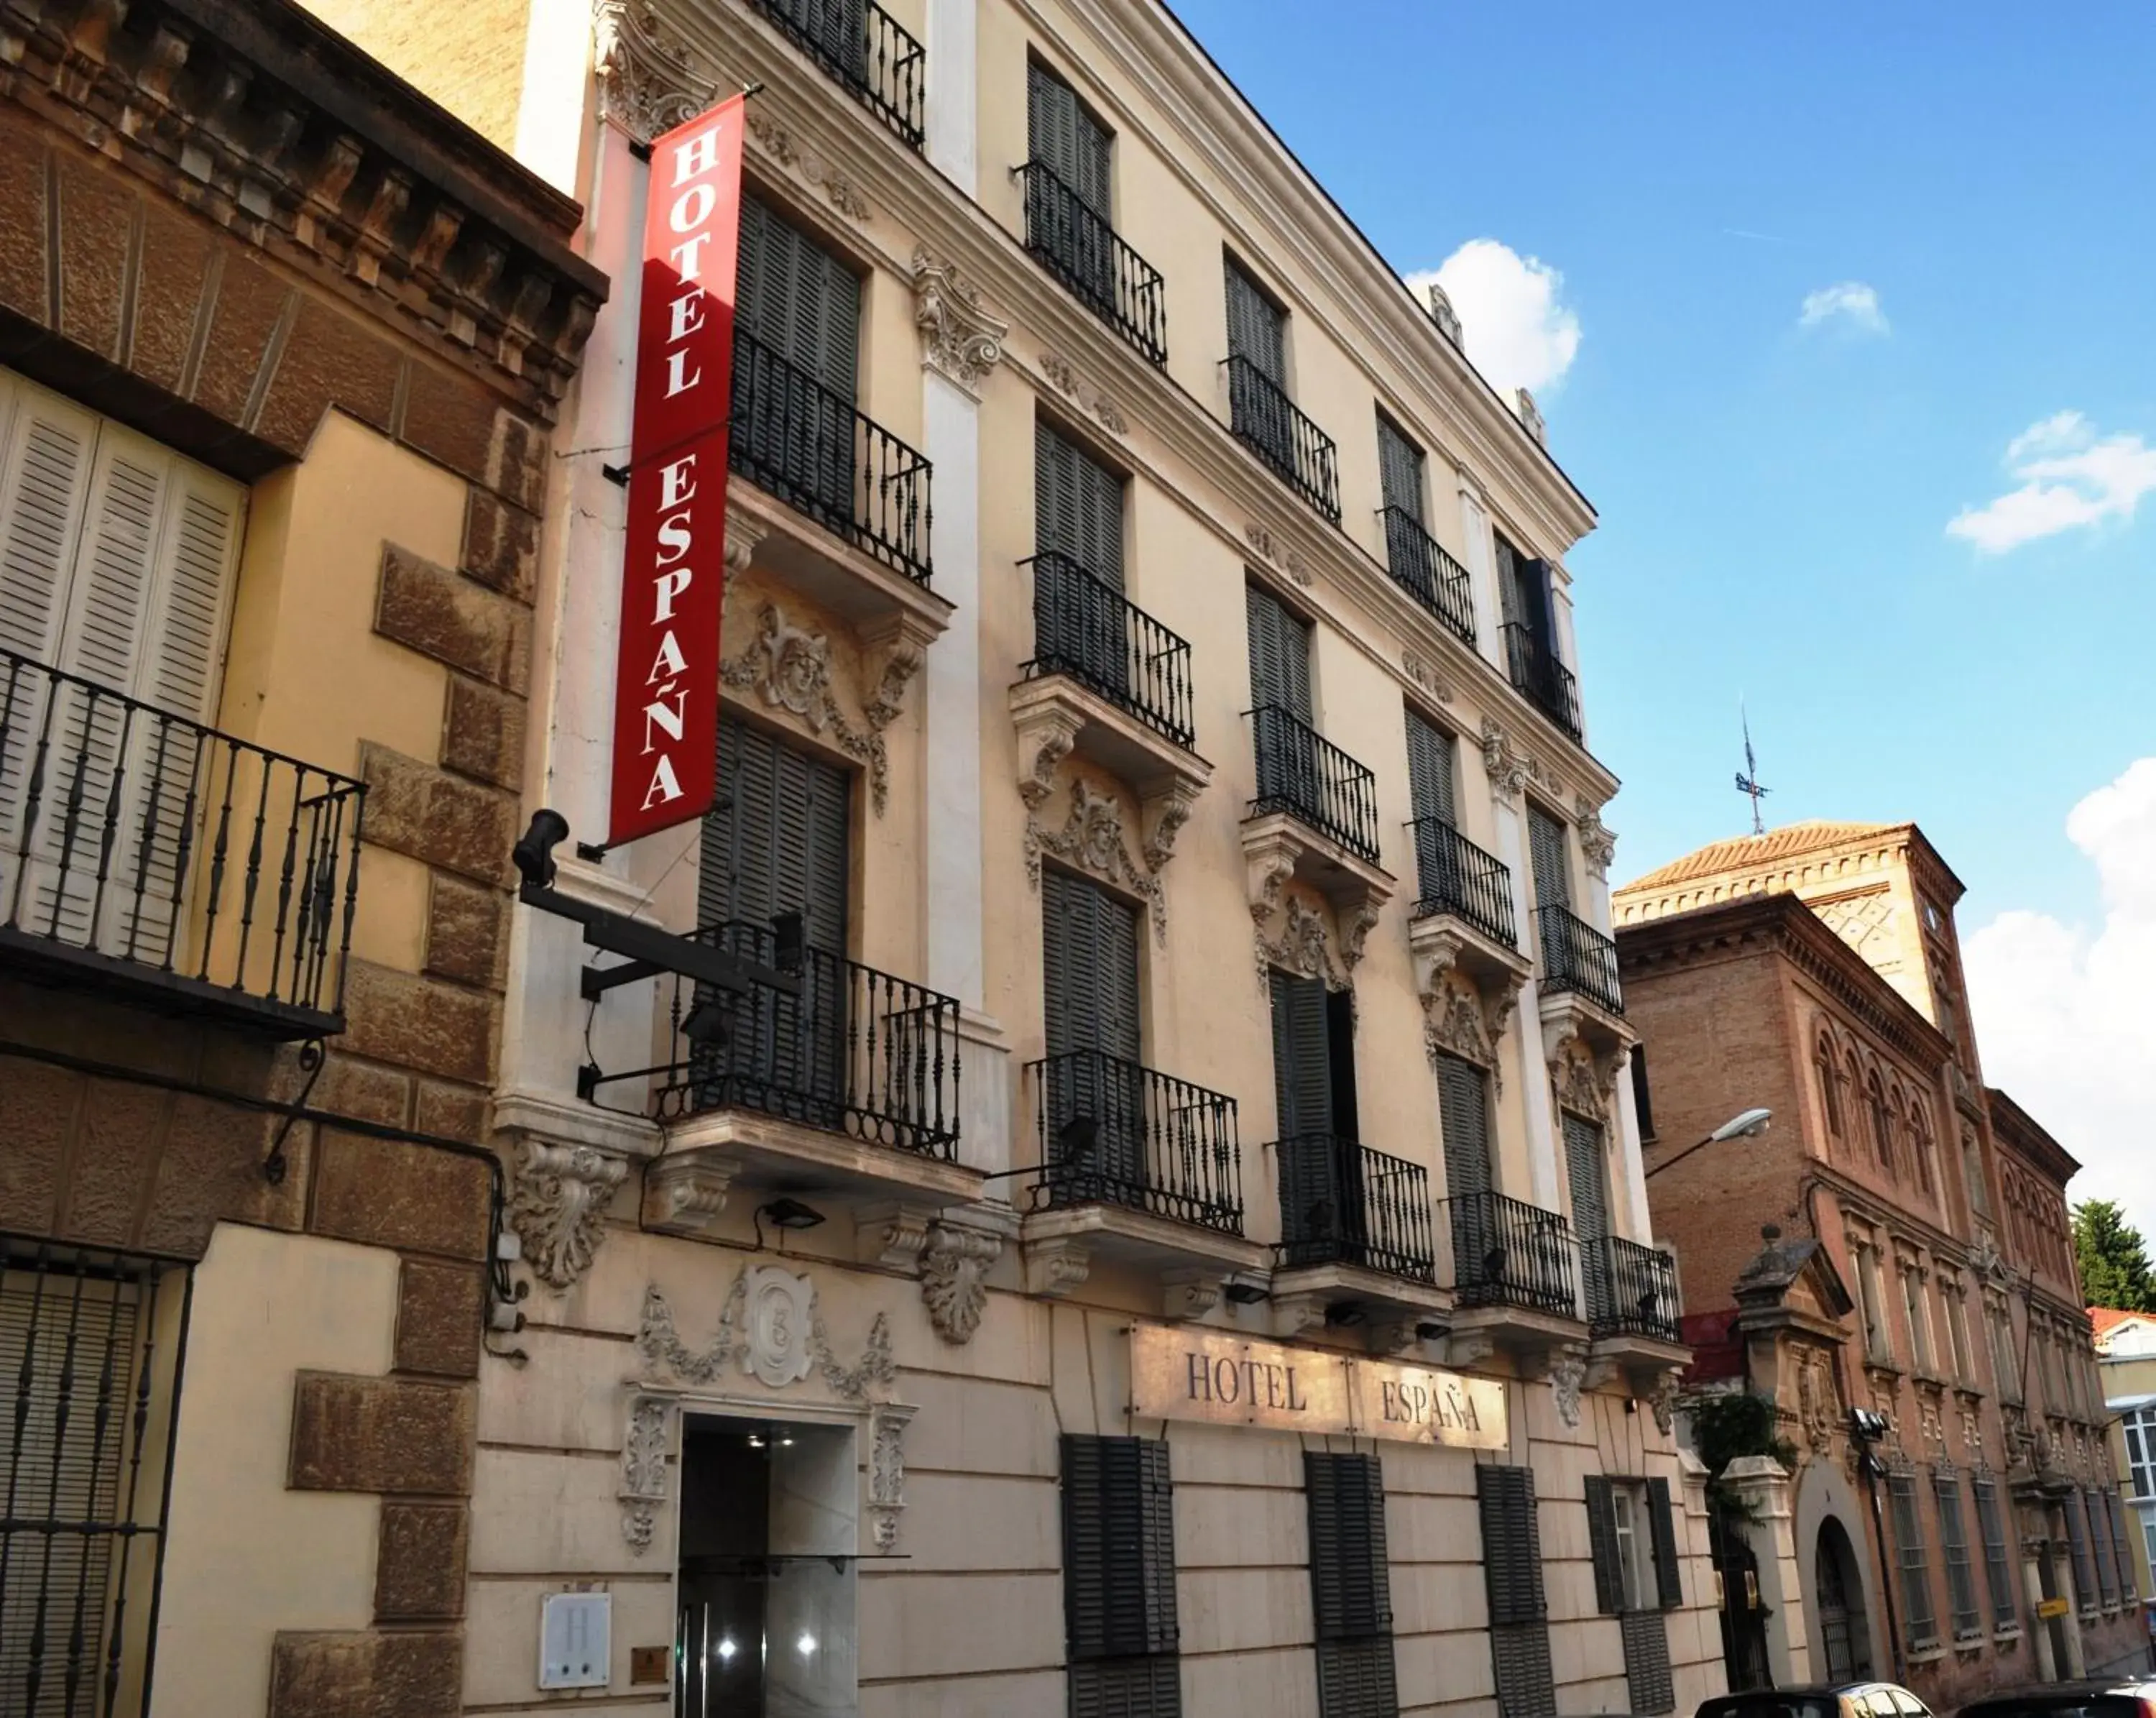 Property building in Hotel España